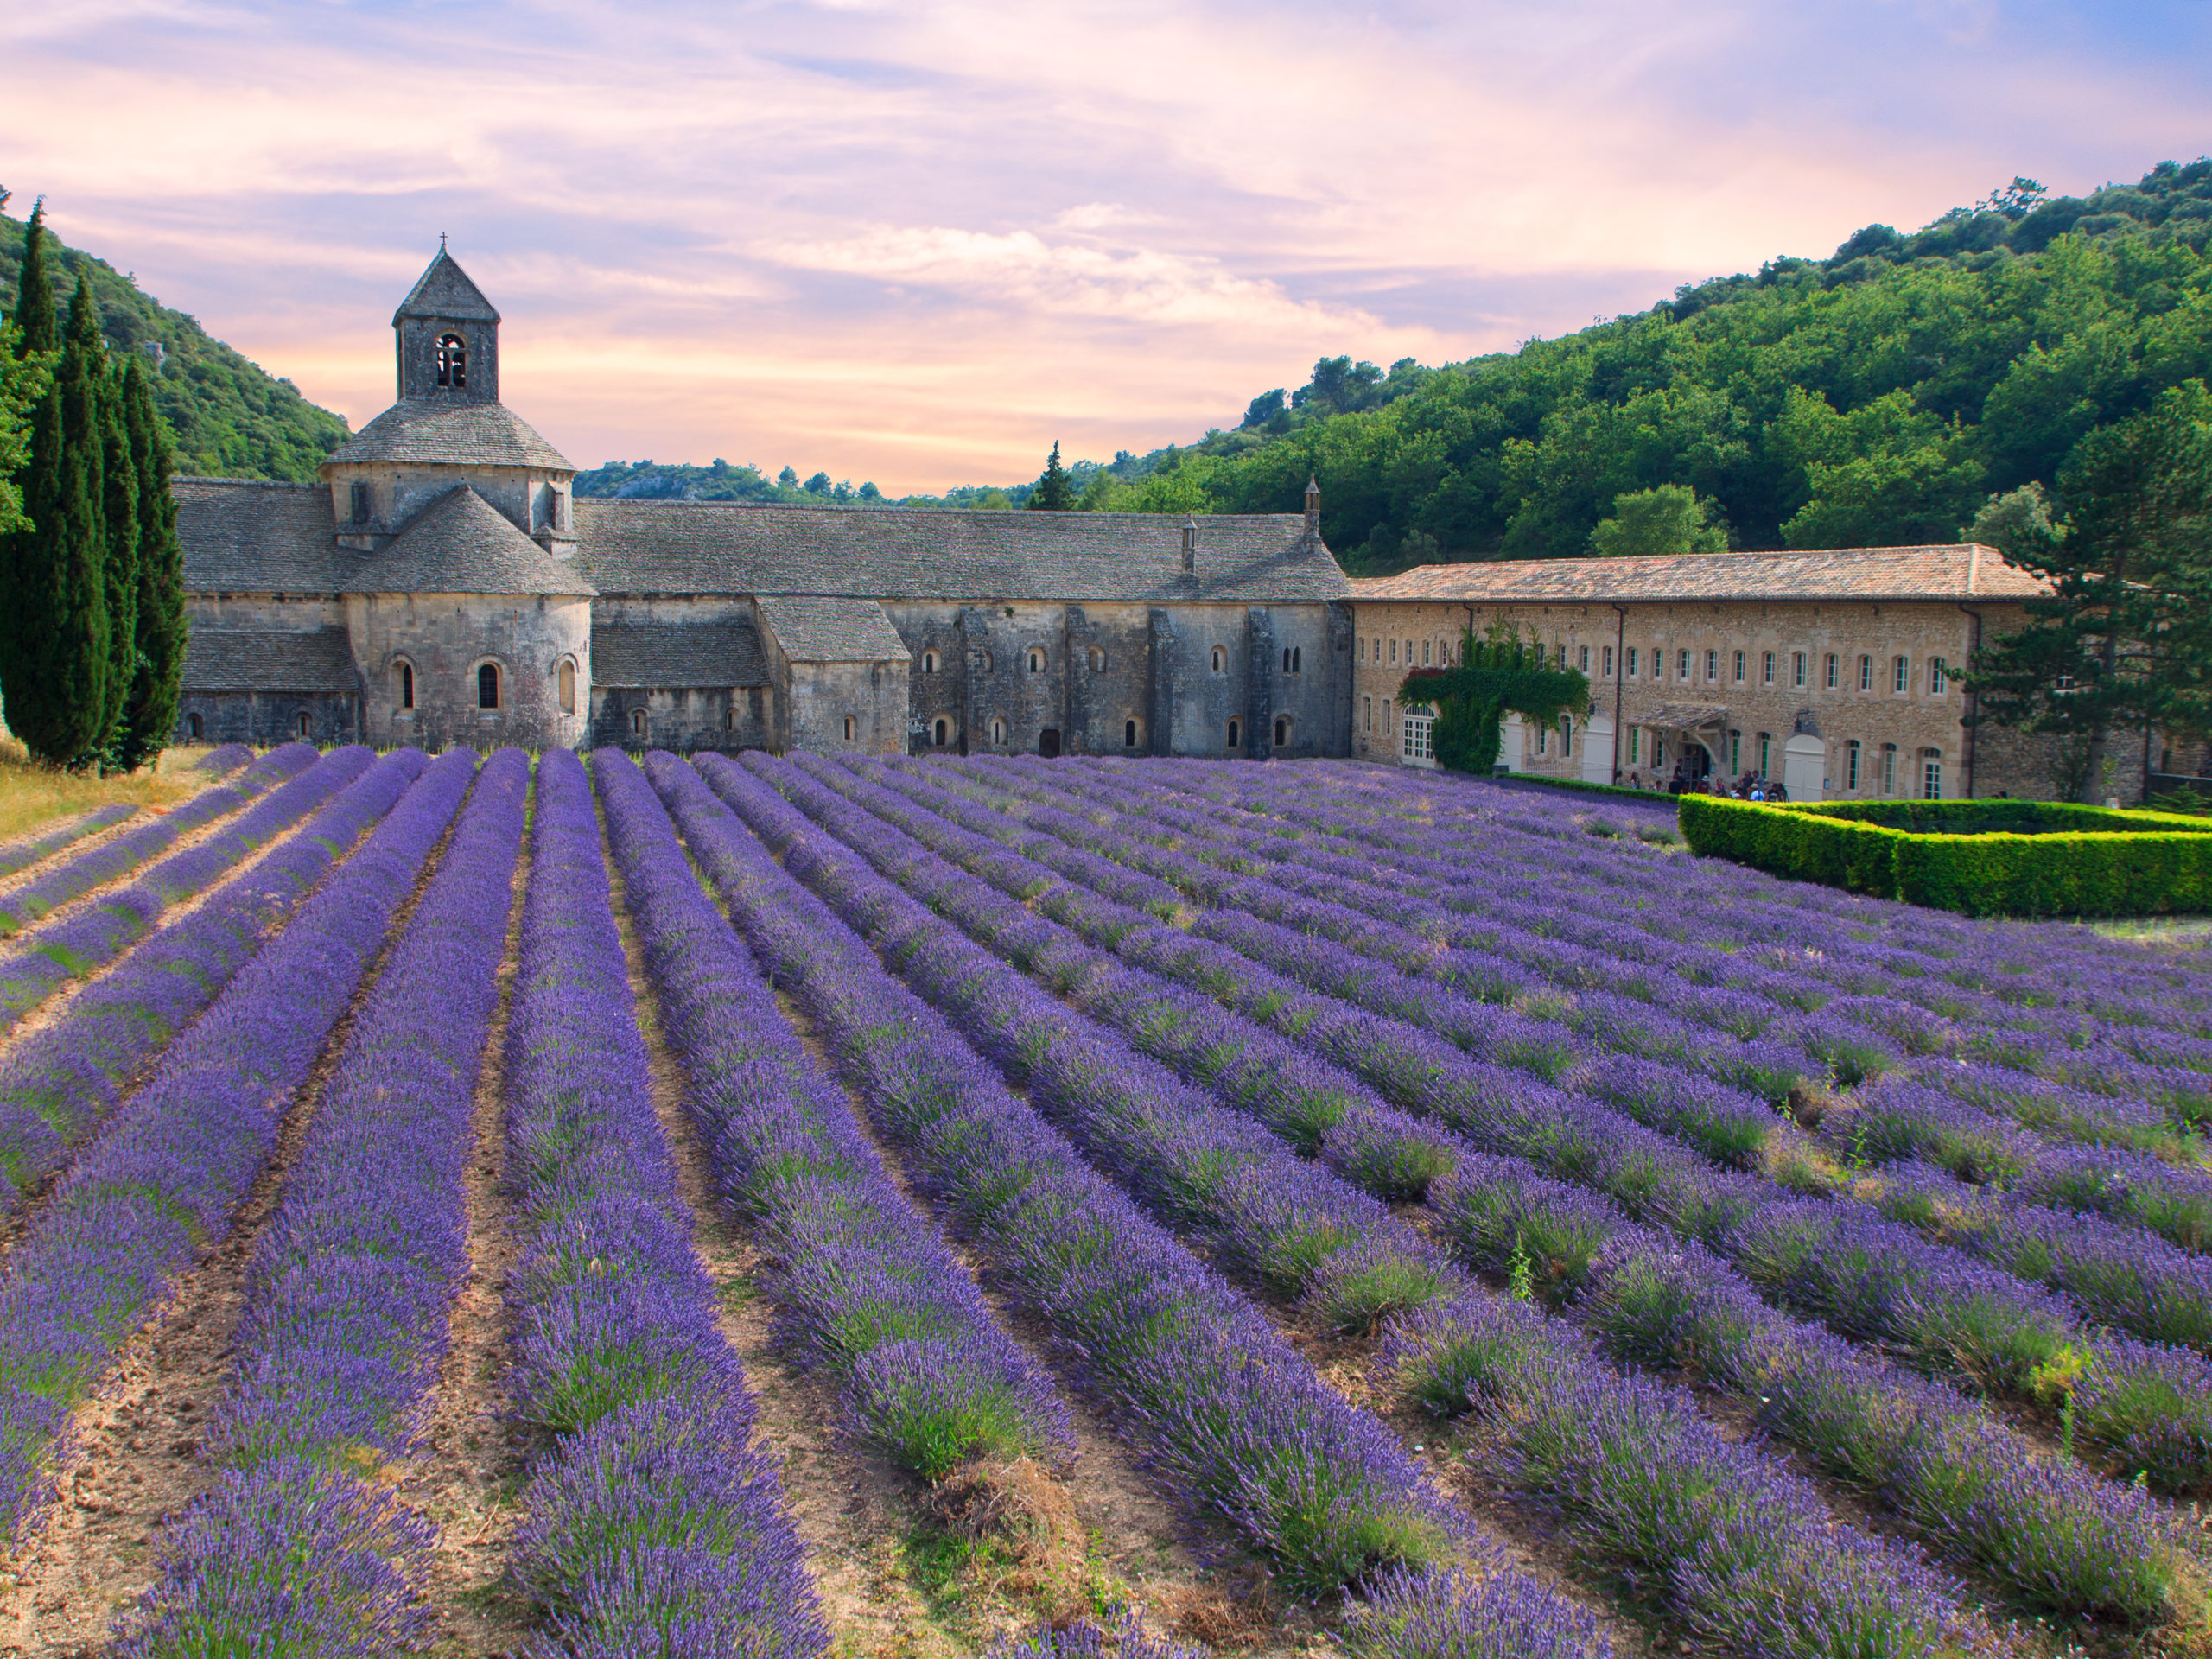 Spirituel Rejse I Frankrig: Klosteret Og Lavendelmarken